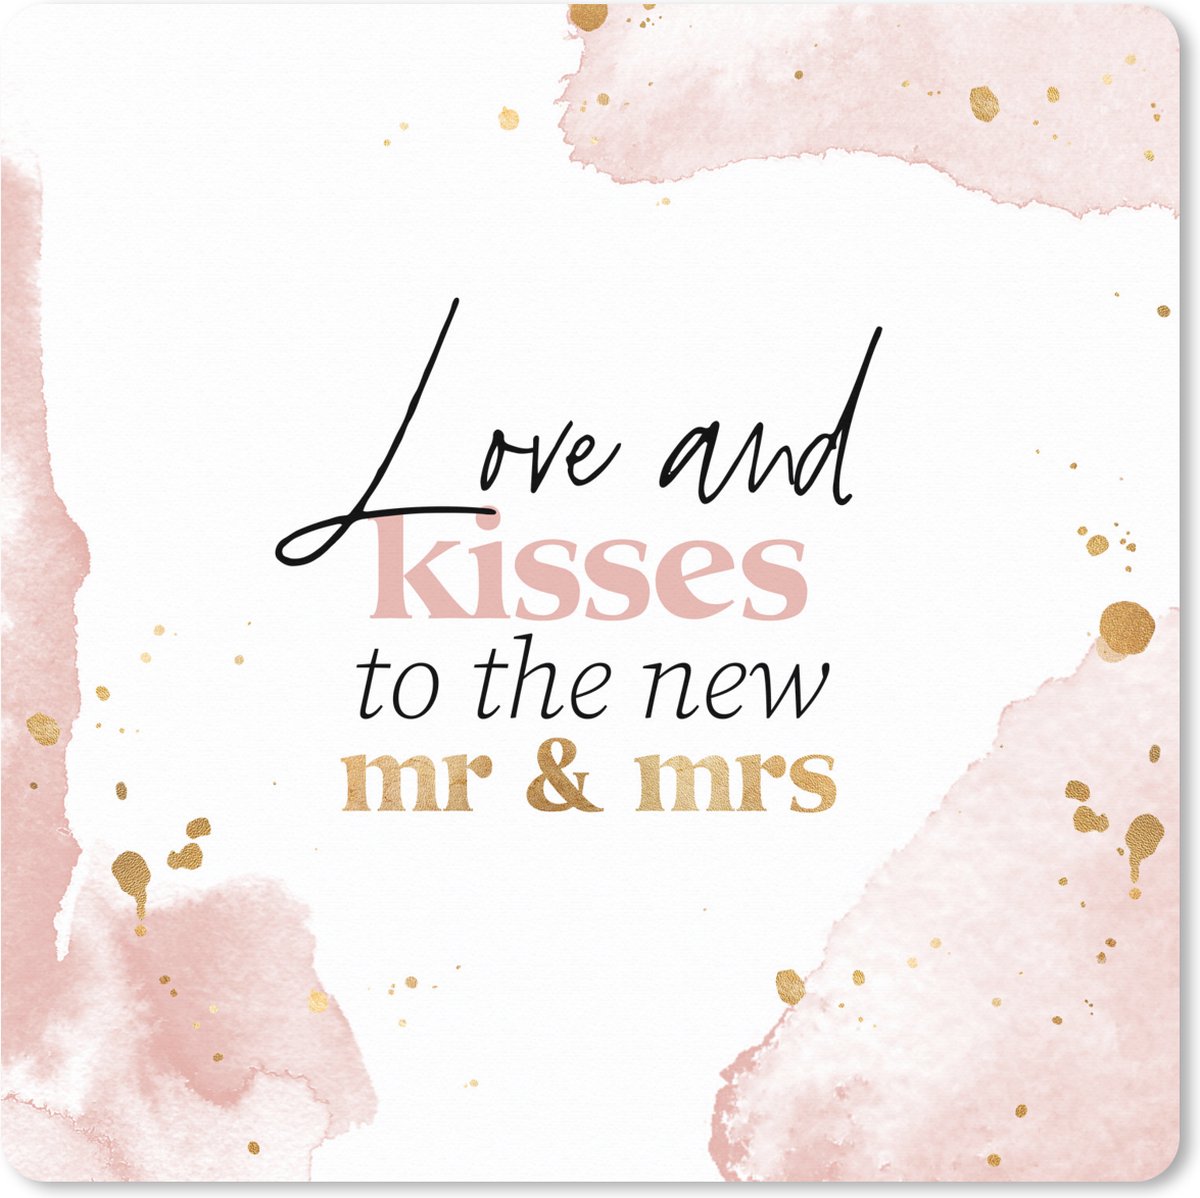 Muismat XXL - Bureau onderlegger - Bureau mat - 'Love and kisses to the new Mr & Mrs' - Bruiloft - Spreuken - Quotes - 50x50 cm - XXL muismat